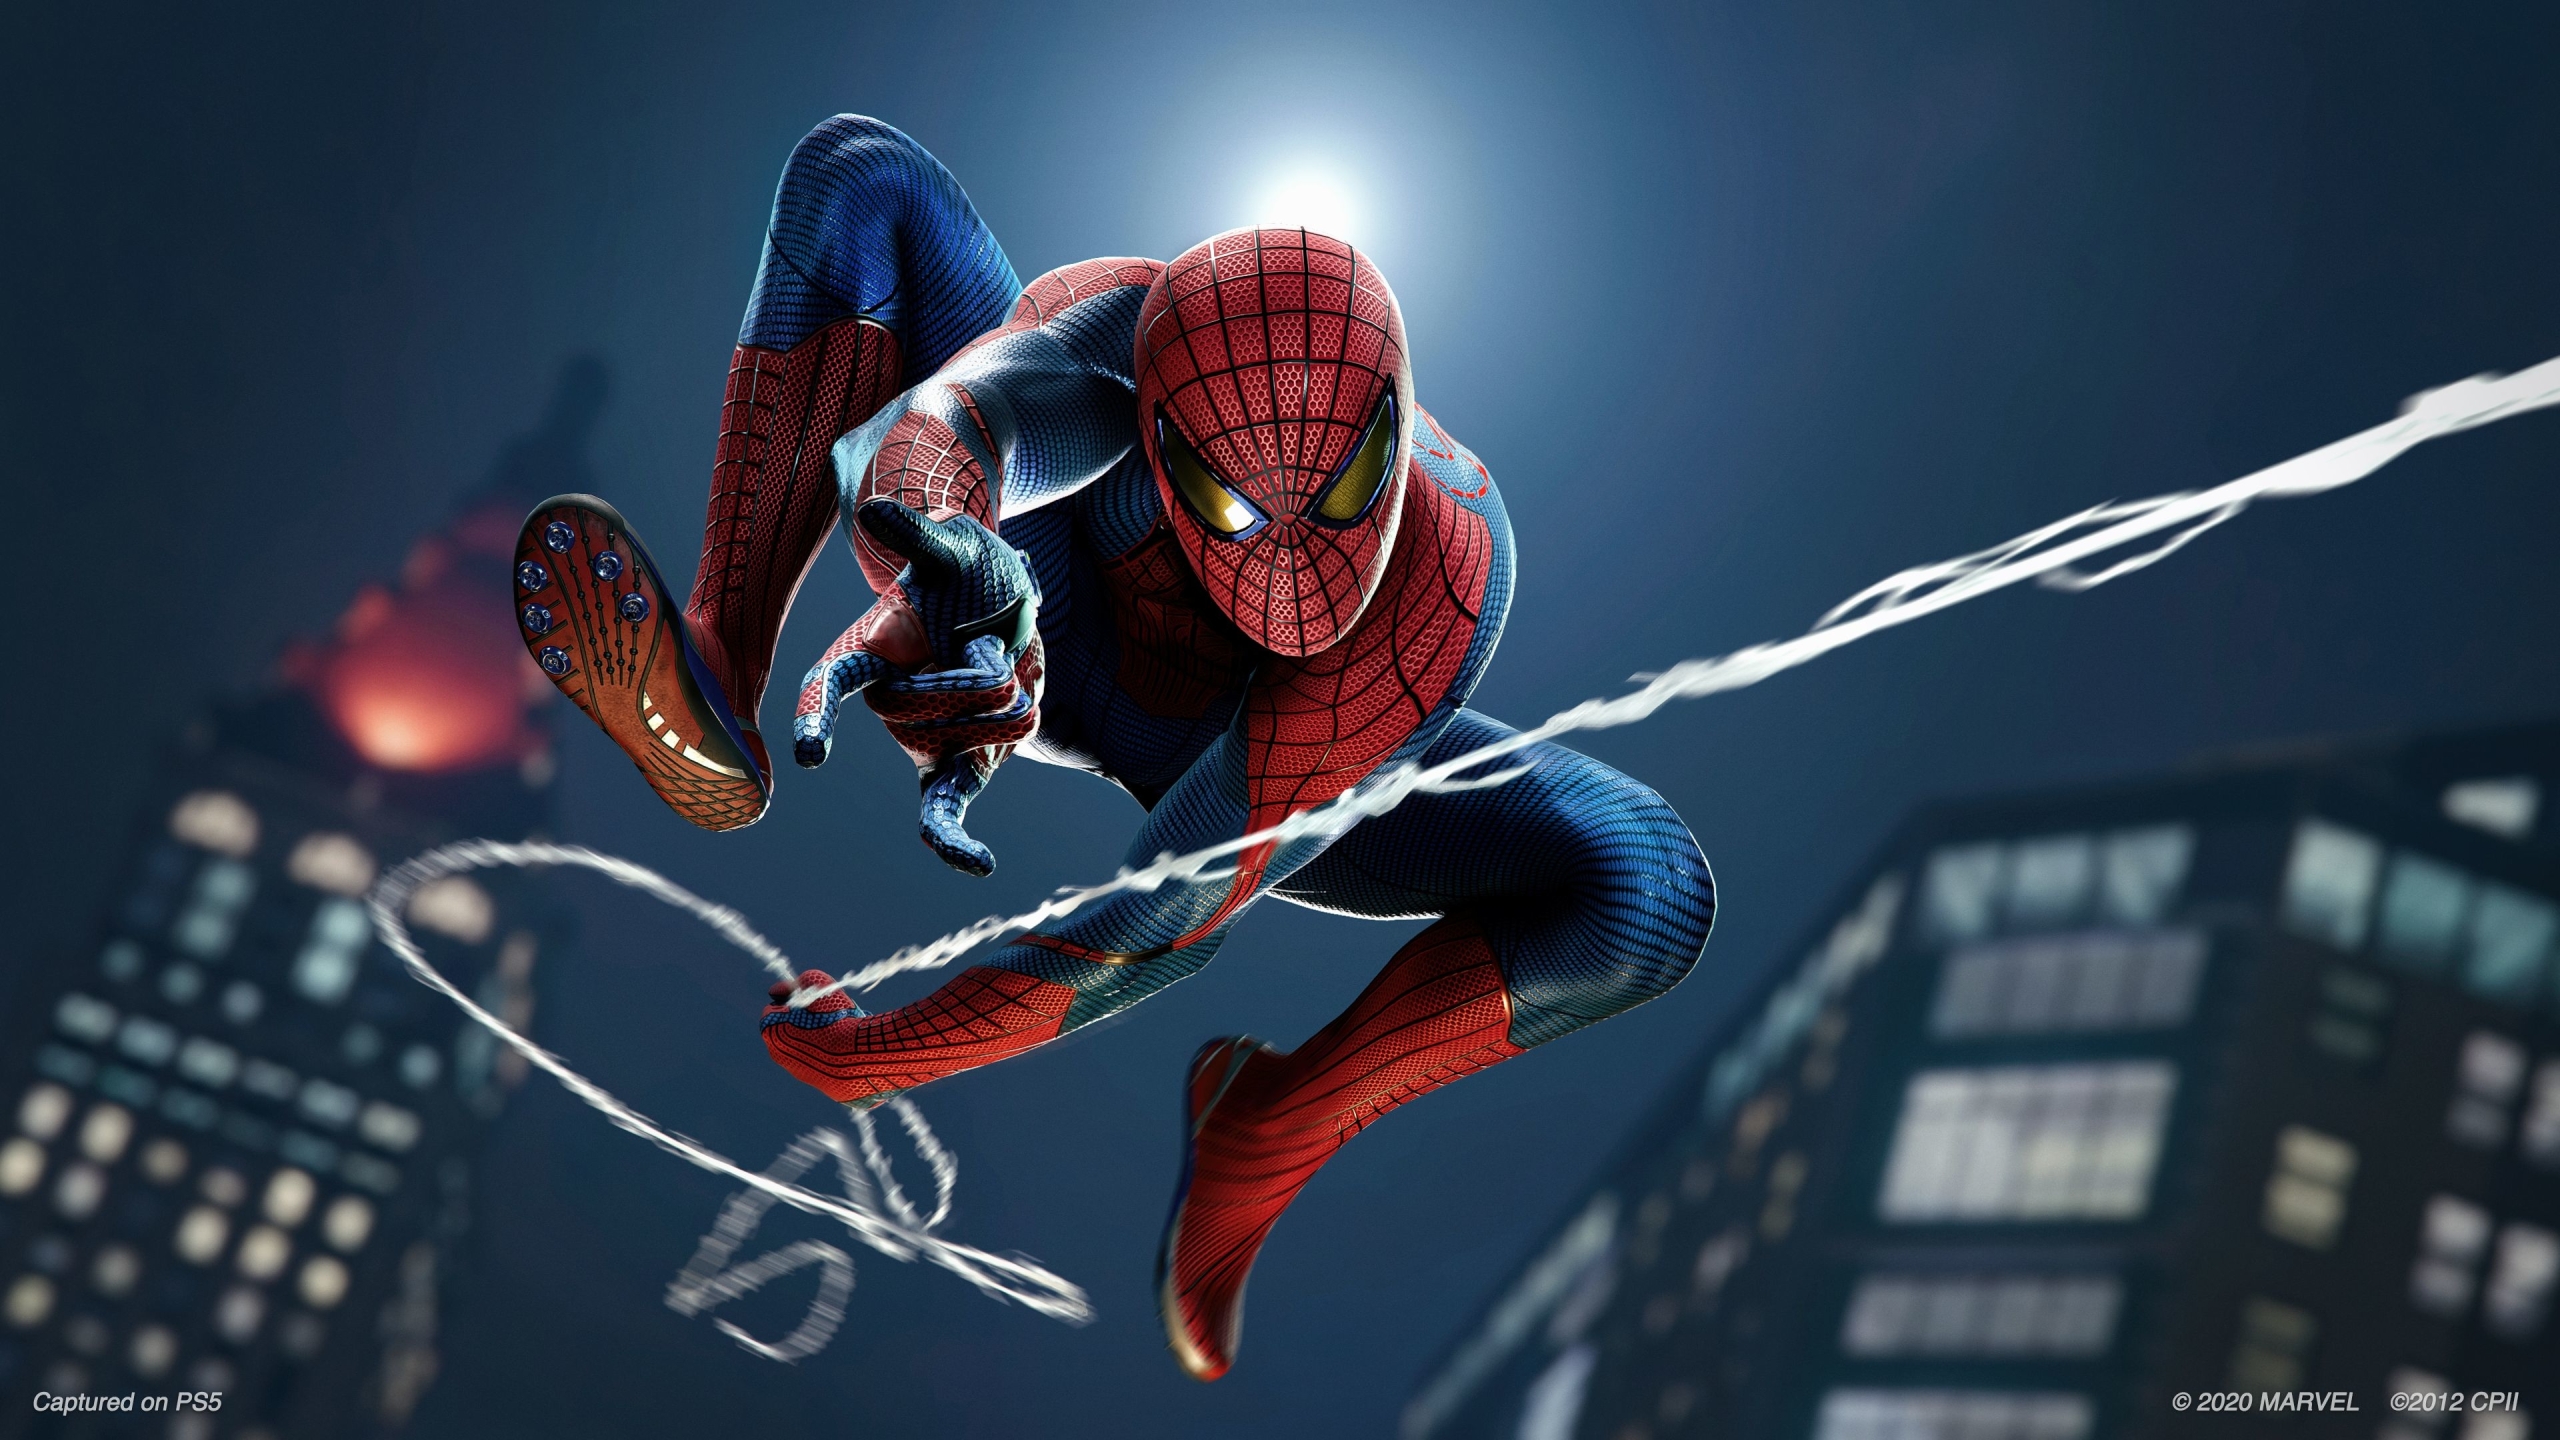 2560x1440 Resolution Spider Man Game Remastered 1440p Resolution